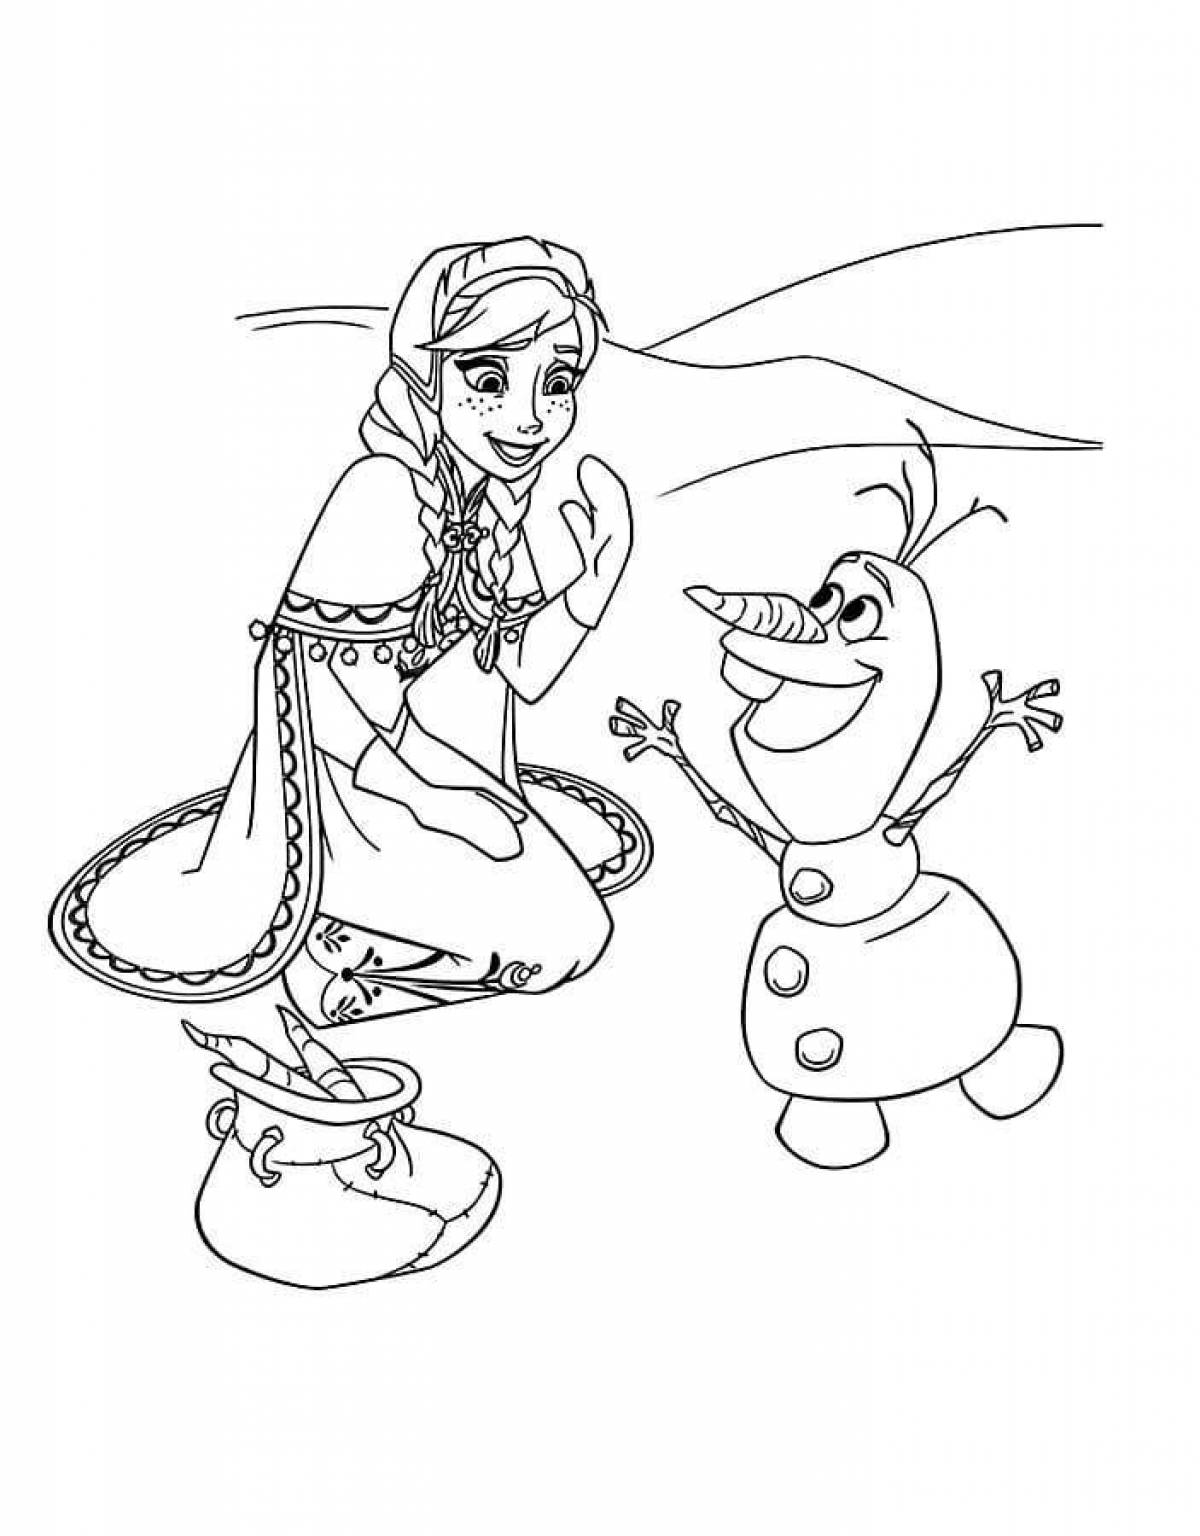 Elsa and olaf fun coloring book